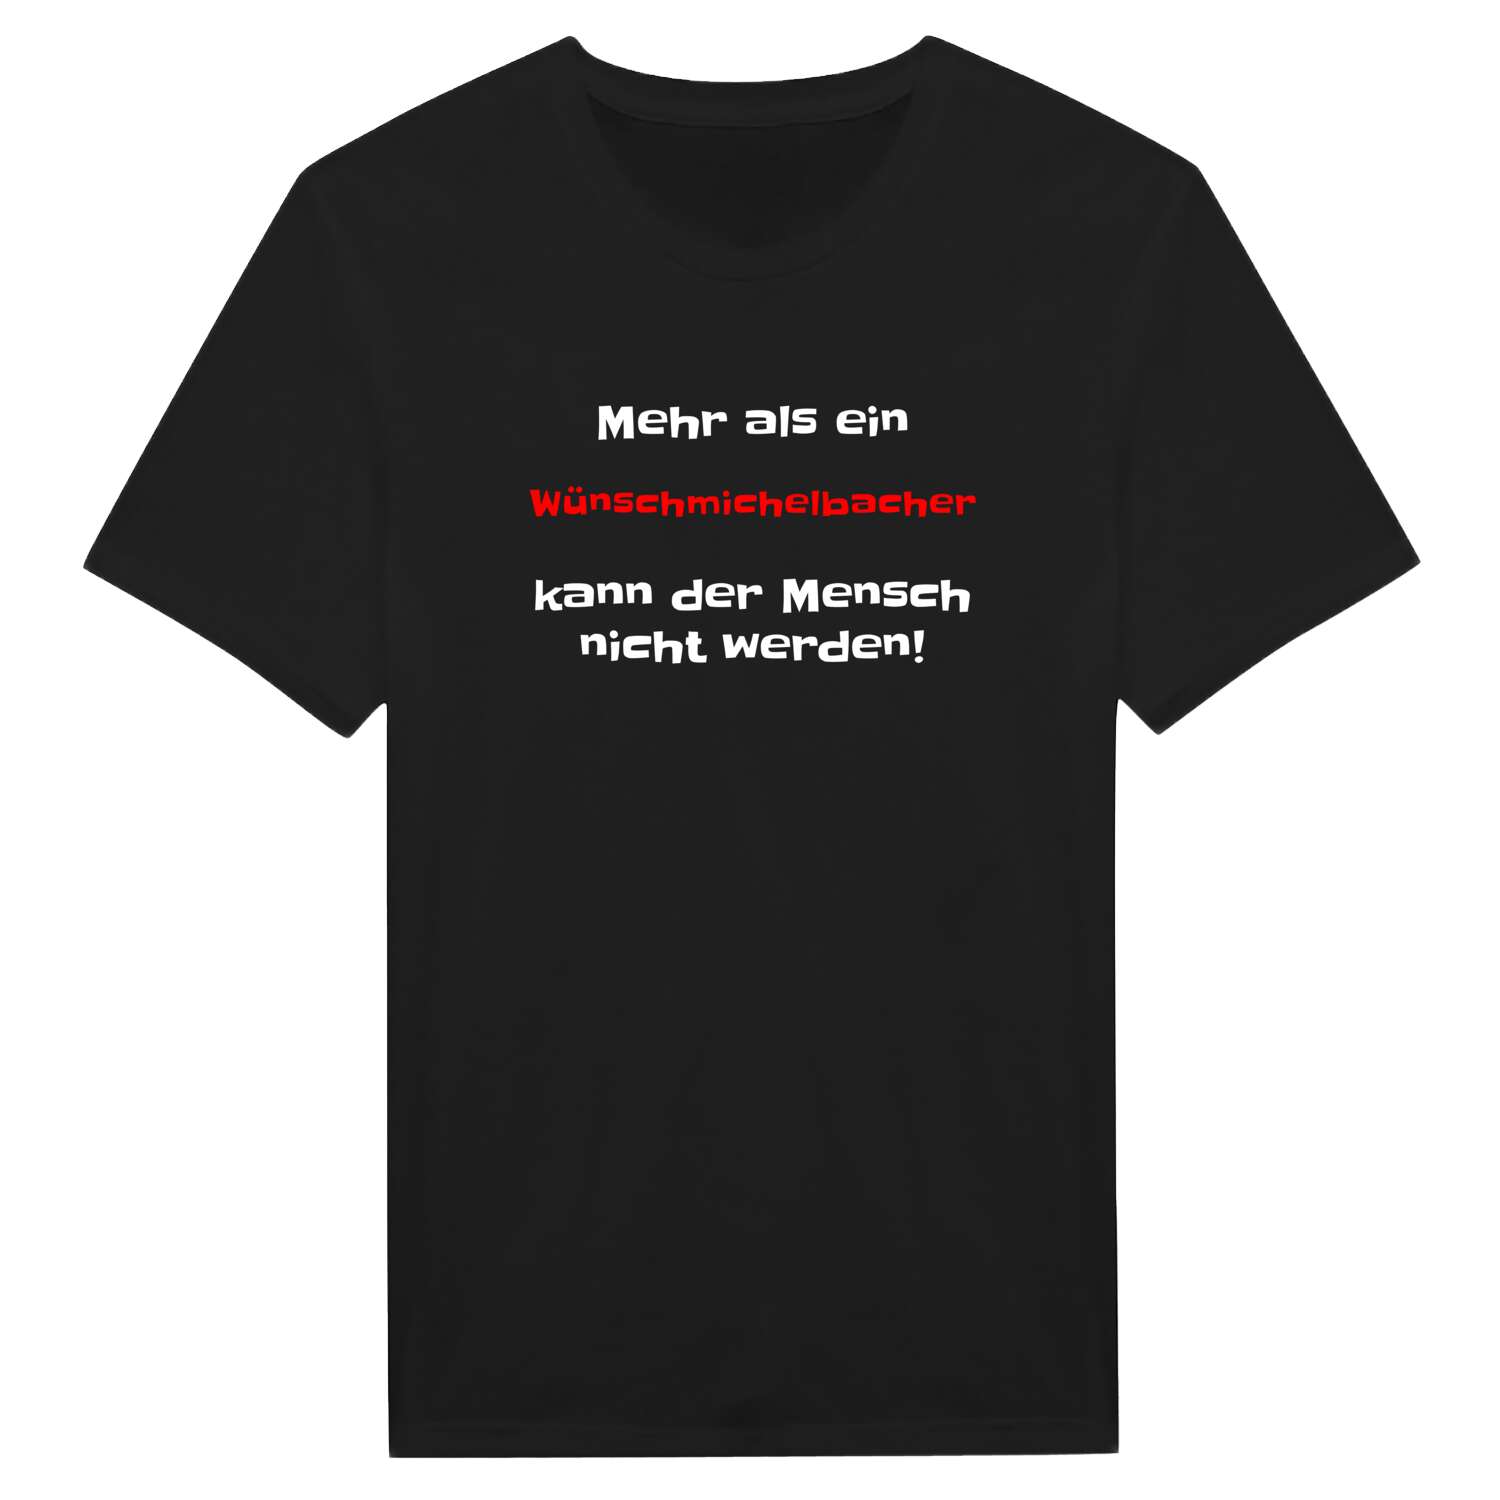 Wünschmichelbach T-Shirt »Mehr als ein«